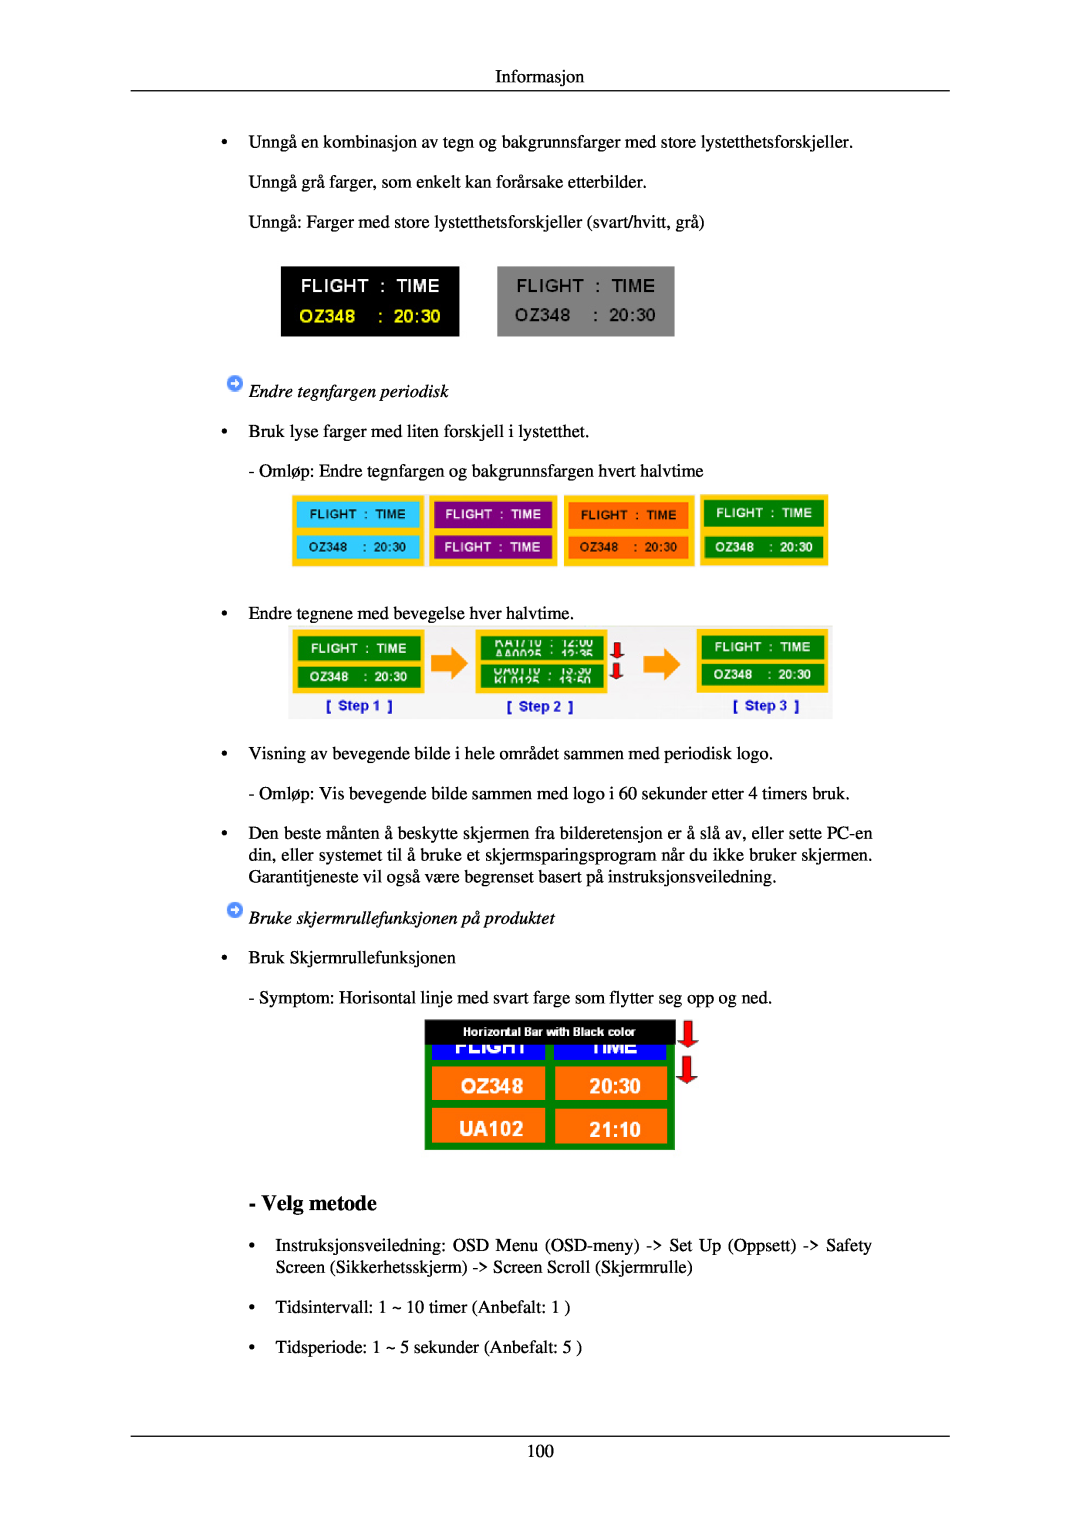 Samsung LH40TCUMBG/EN, LH46TCUMBC/EN Velg metode, Endre tegnfargen periodisk, Bruke skjermrullefunksjonen på produktet 